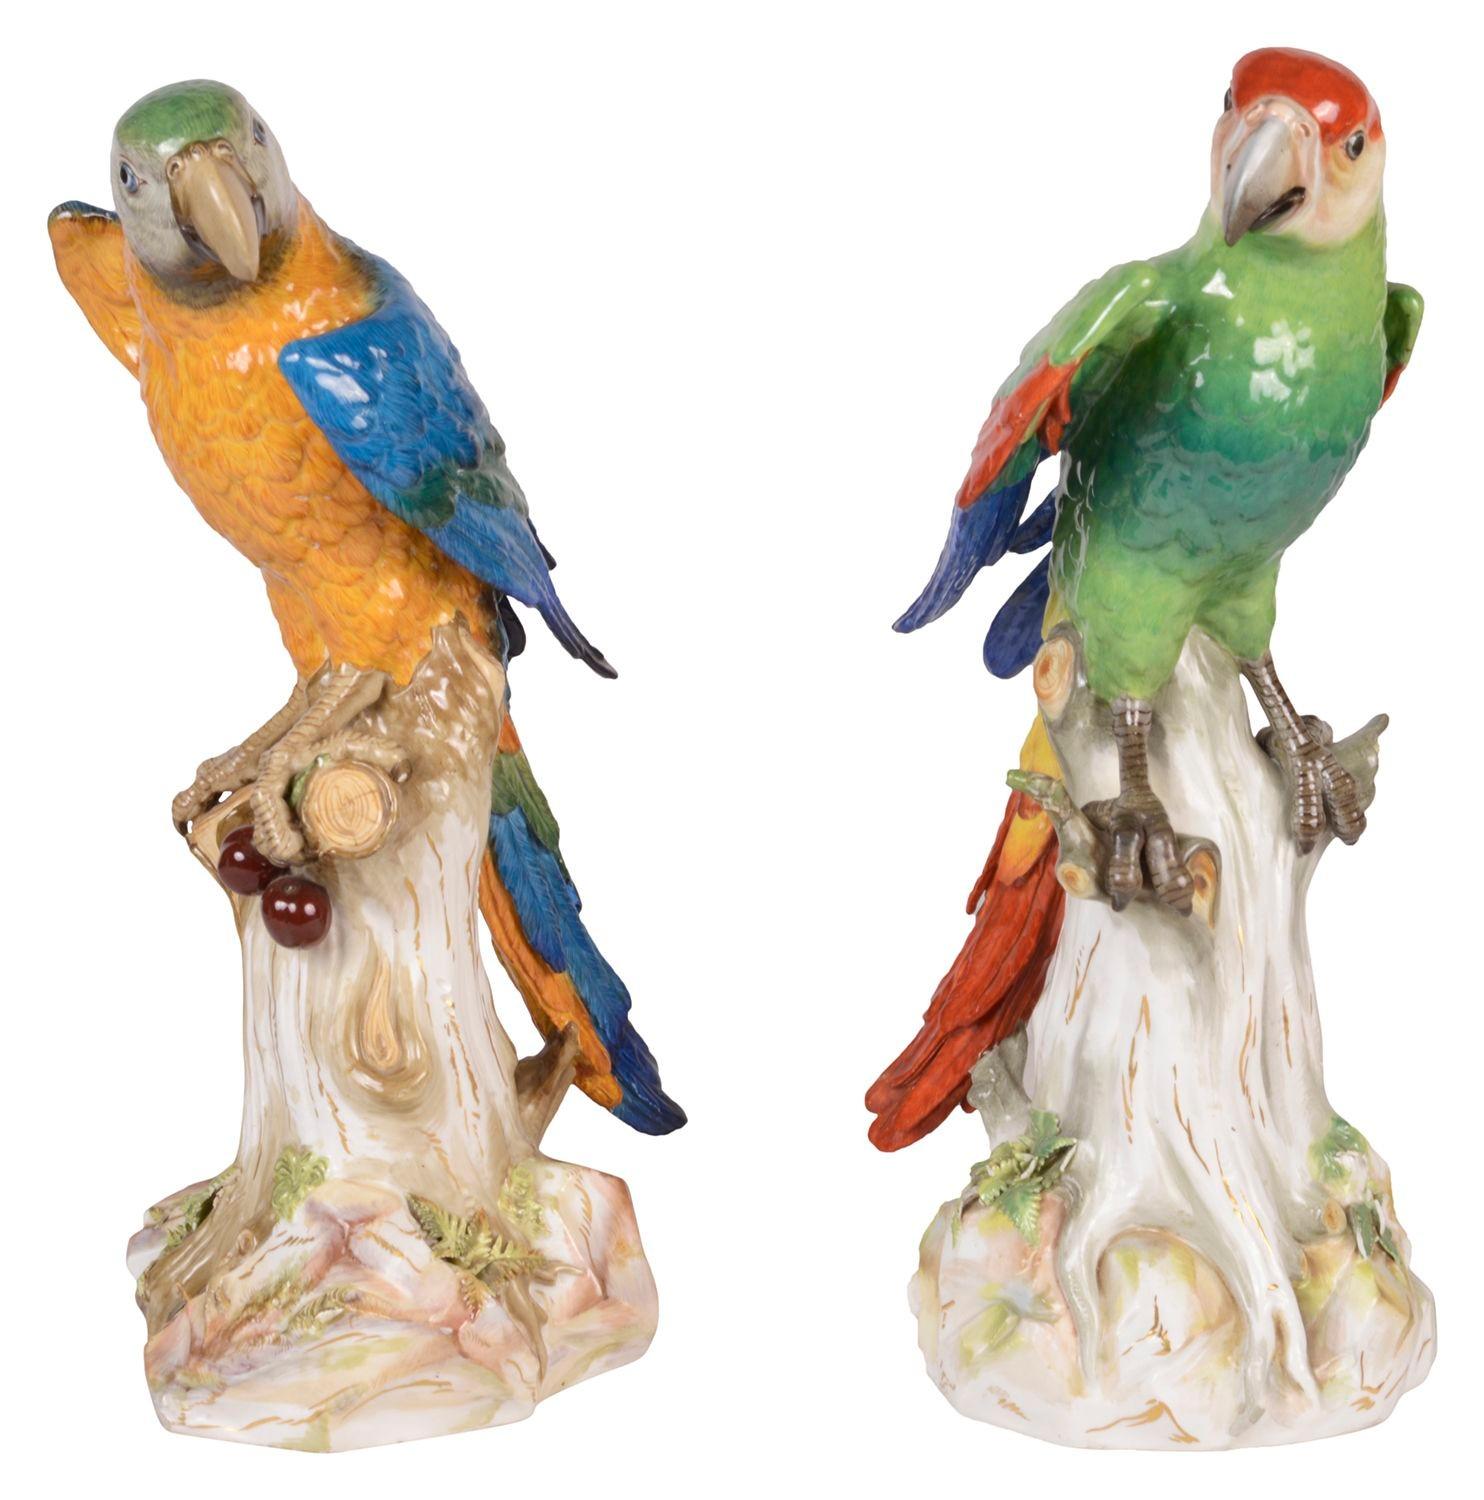 Une grande et impressionnante paire de perroquets merveilleusement colorés, modelés de façon naturaliste, l'un tenant des cerises dans sa patte, tous deux perchés sur des souches d'arbres.
Épées croisées bleues sur le dessous. Mesure : 43cm de